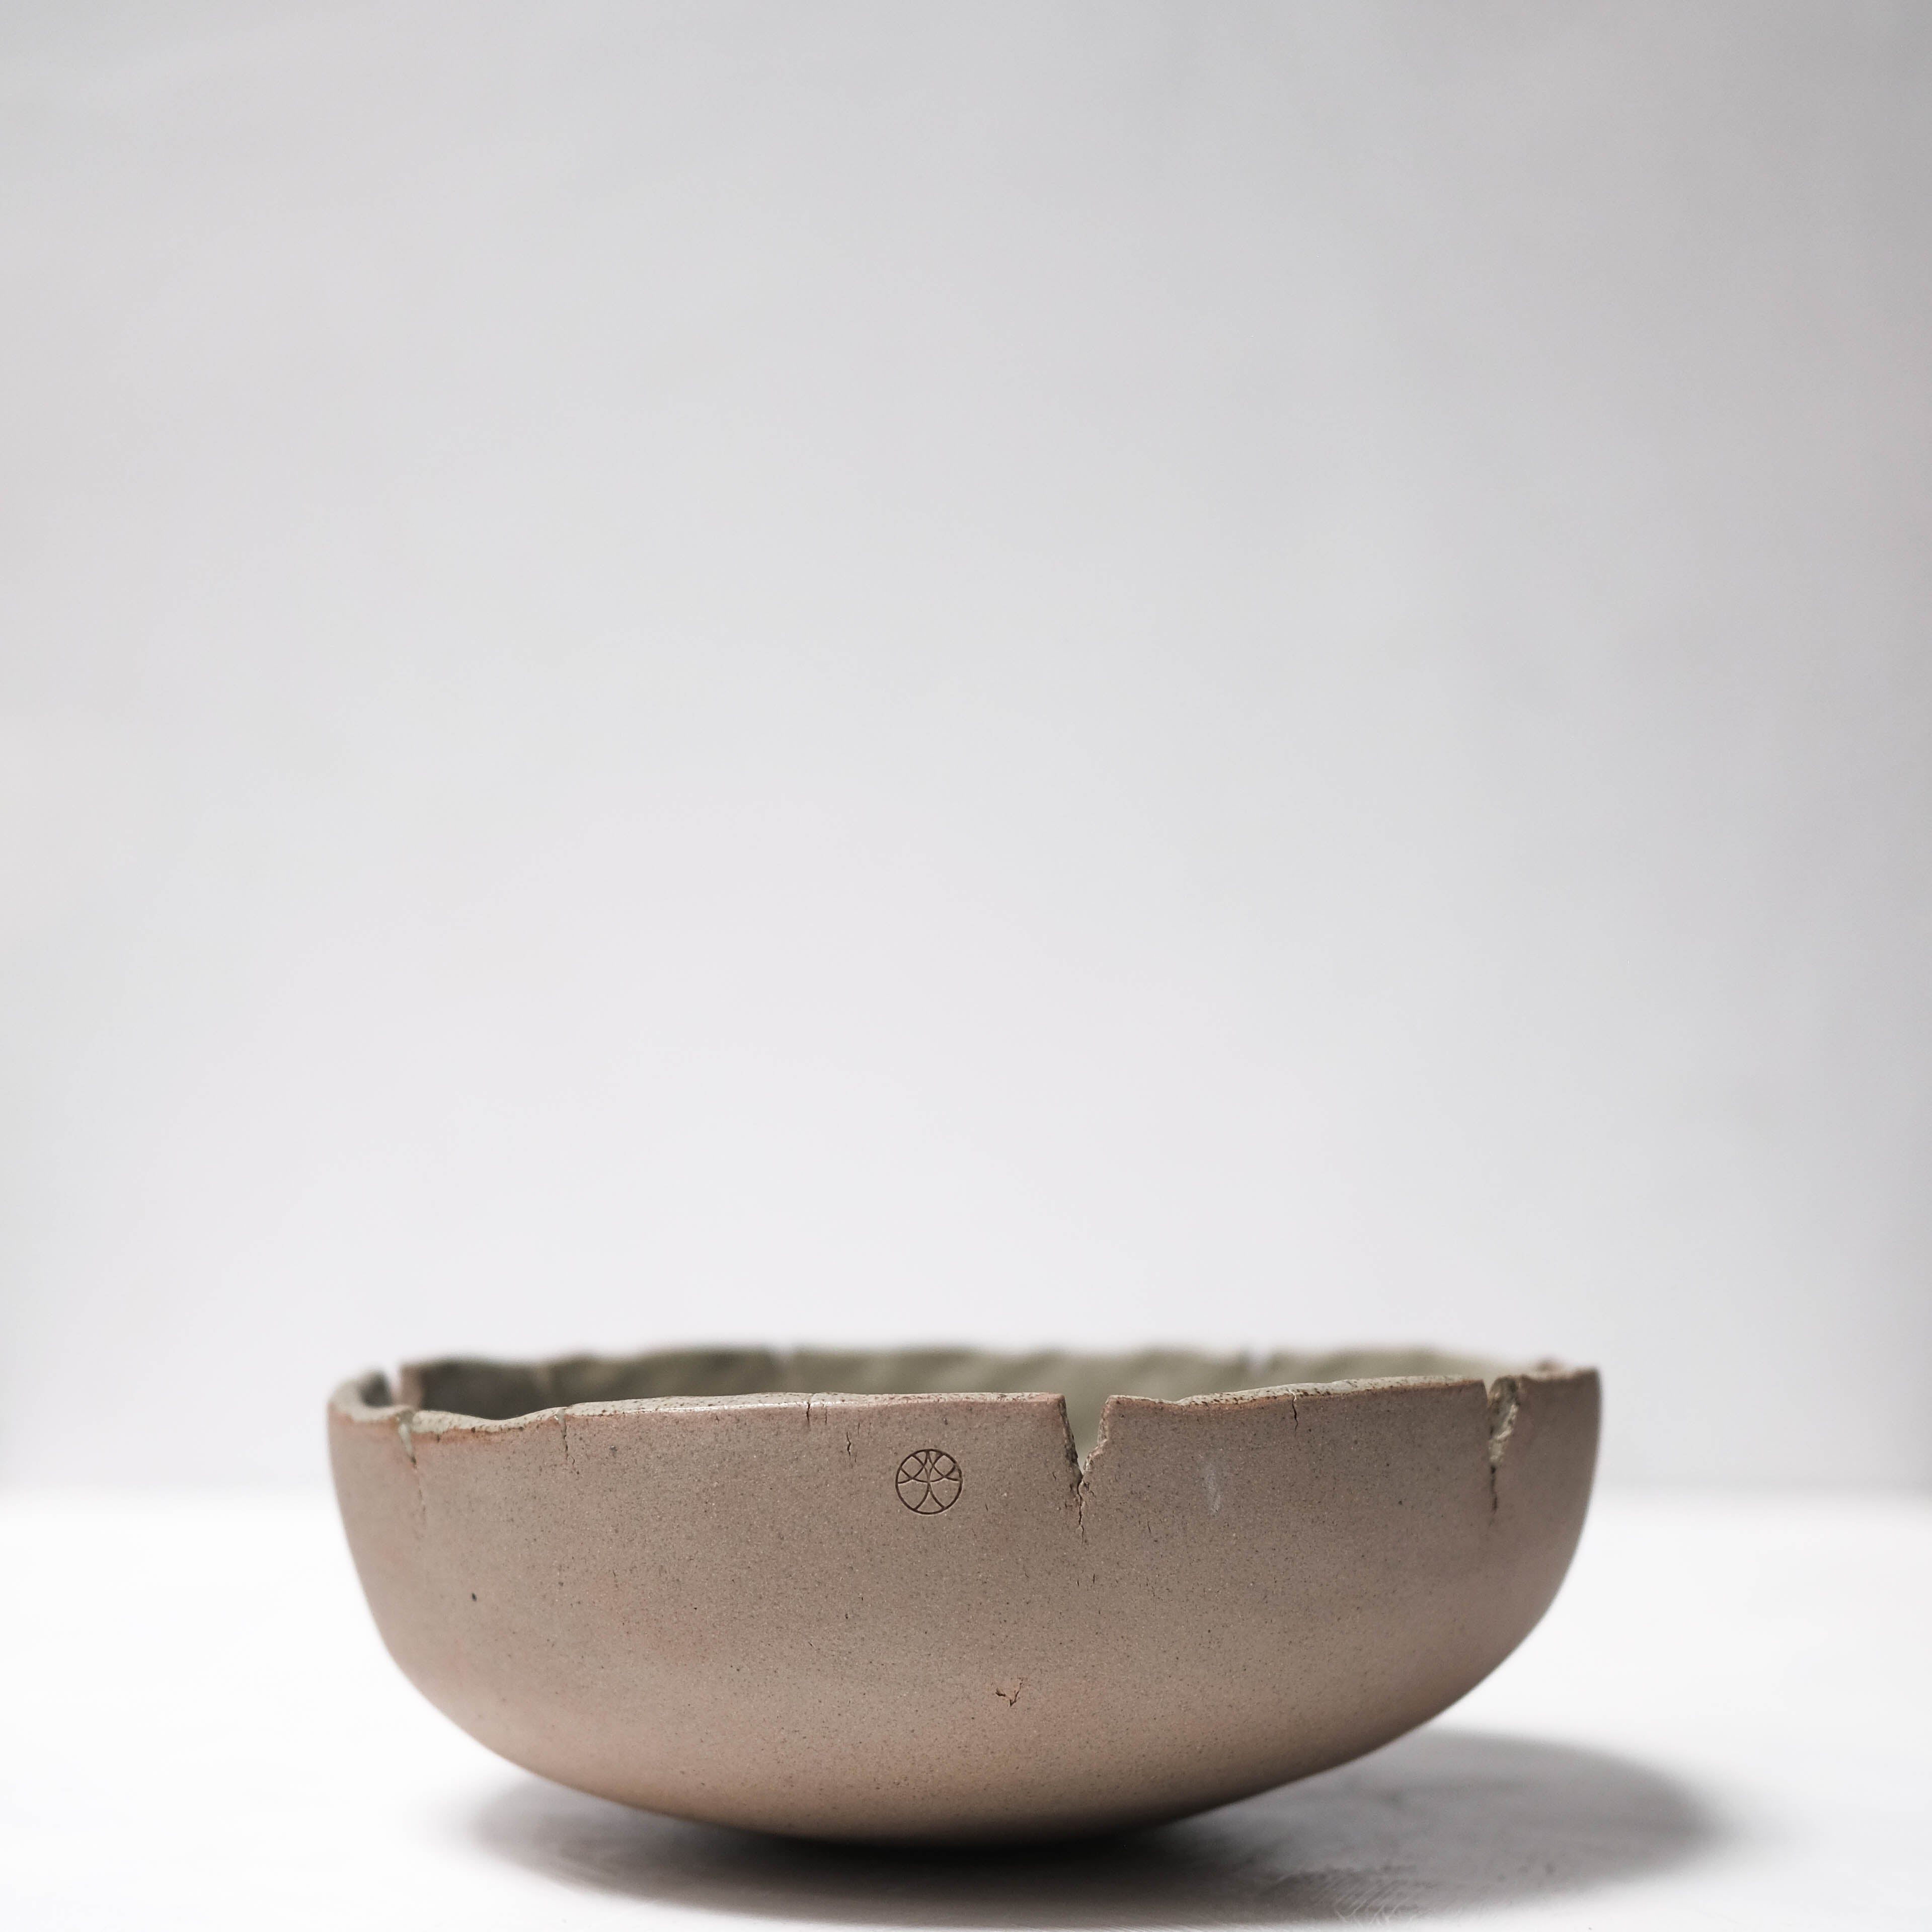 Haigusuri (灰釉) Bowl #ASH42